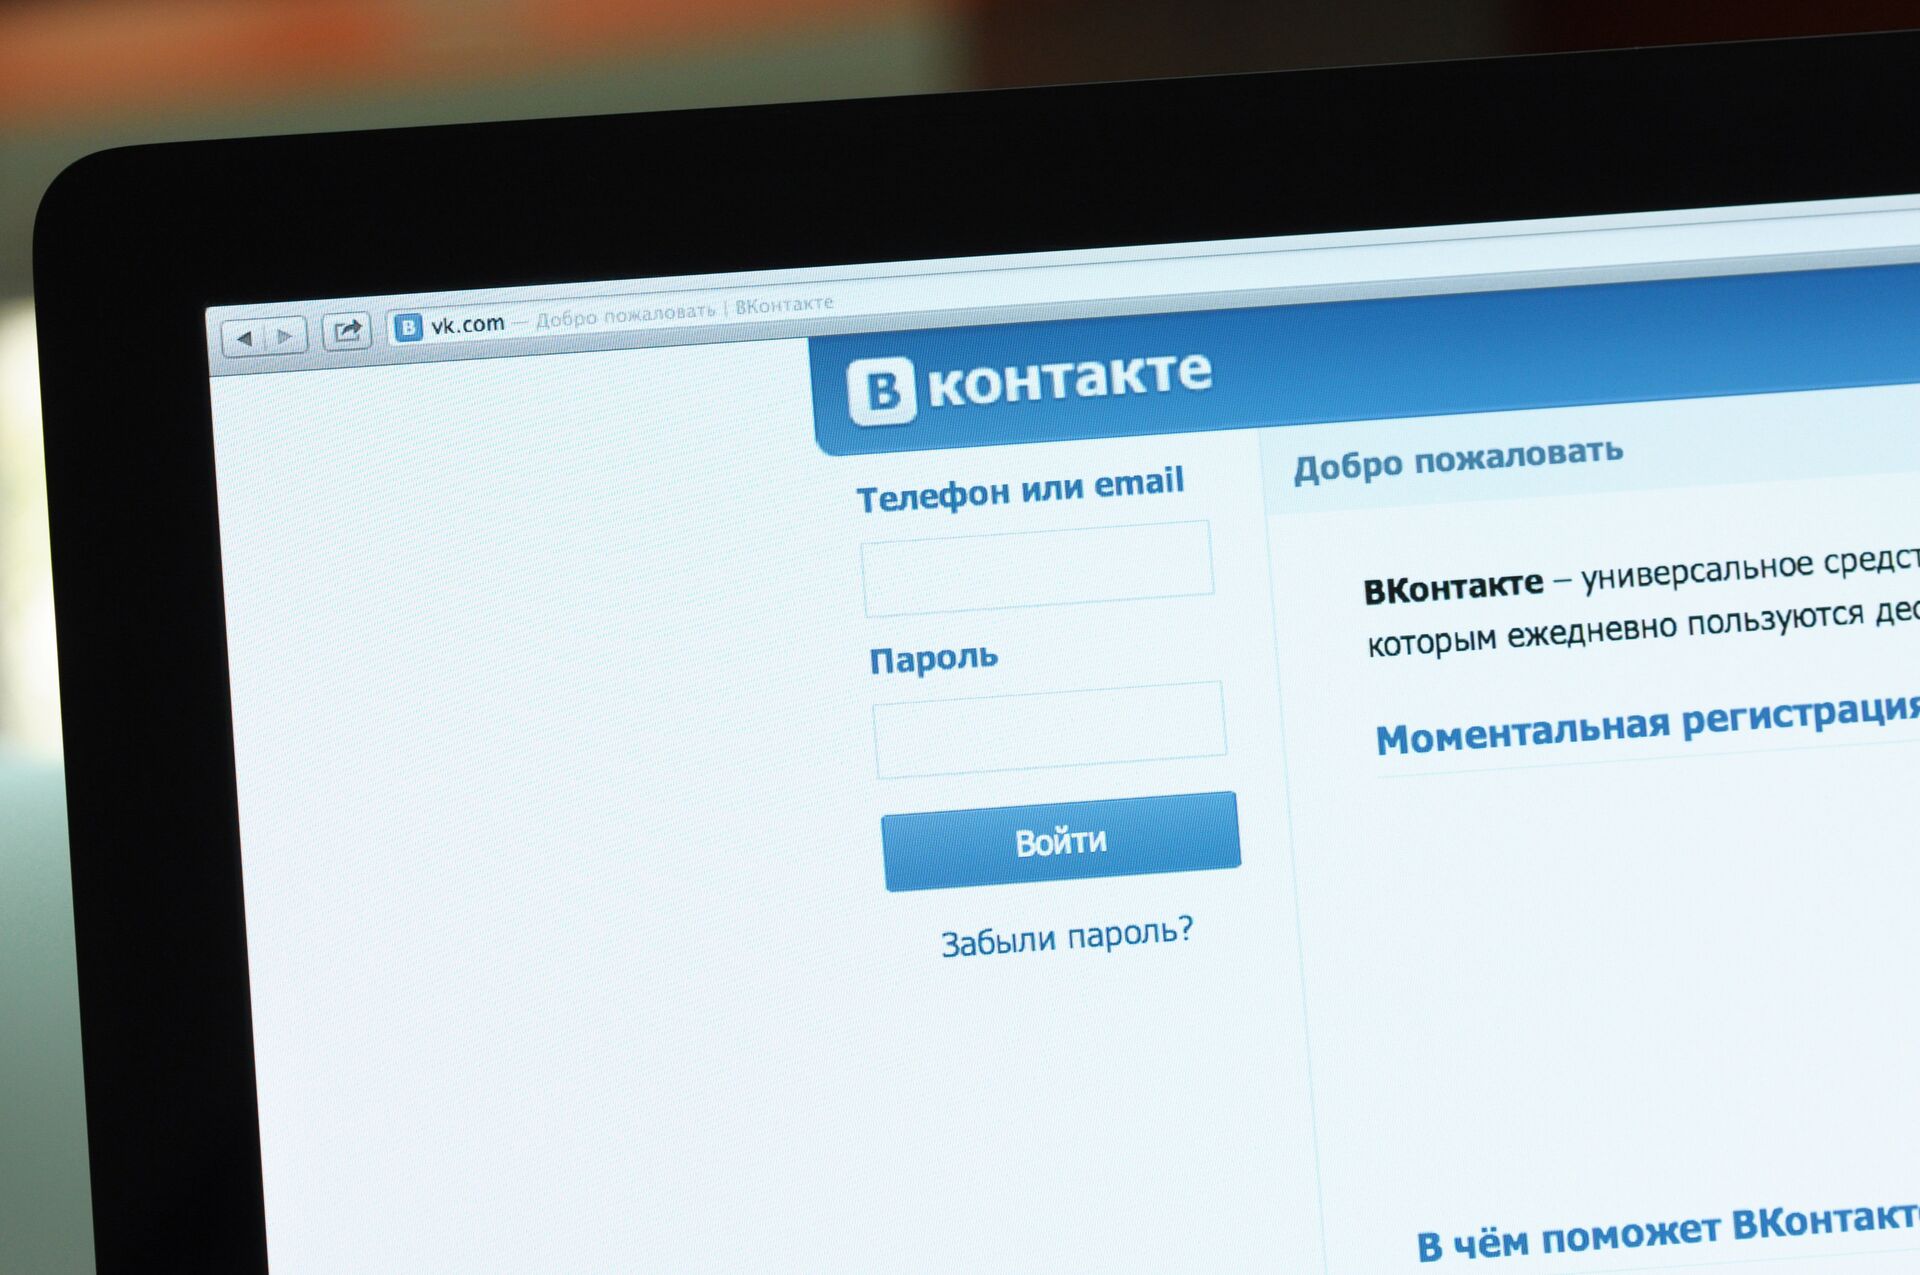 Логотип и начальная страница социальной сети Вконтакте на экране компьютера - Sputnik Ўзбекистон, 1920, 03.12.2021